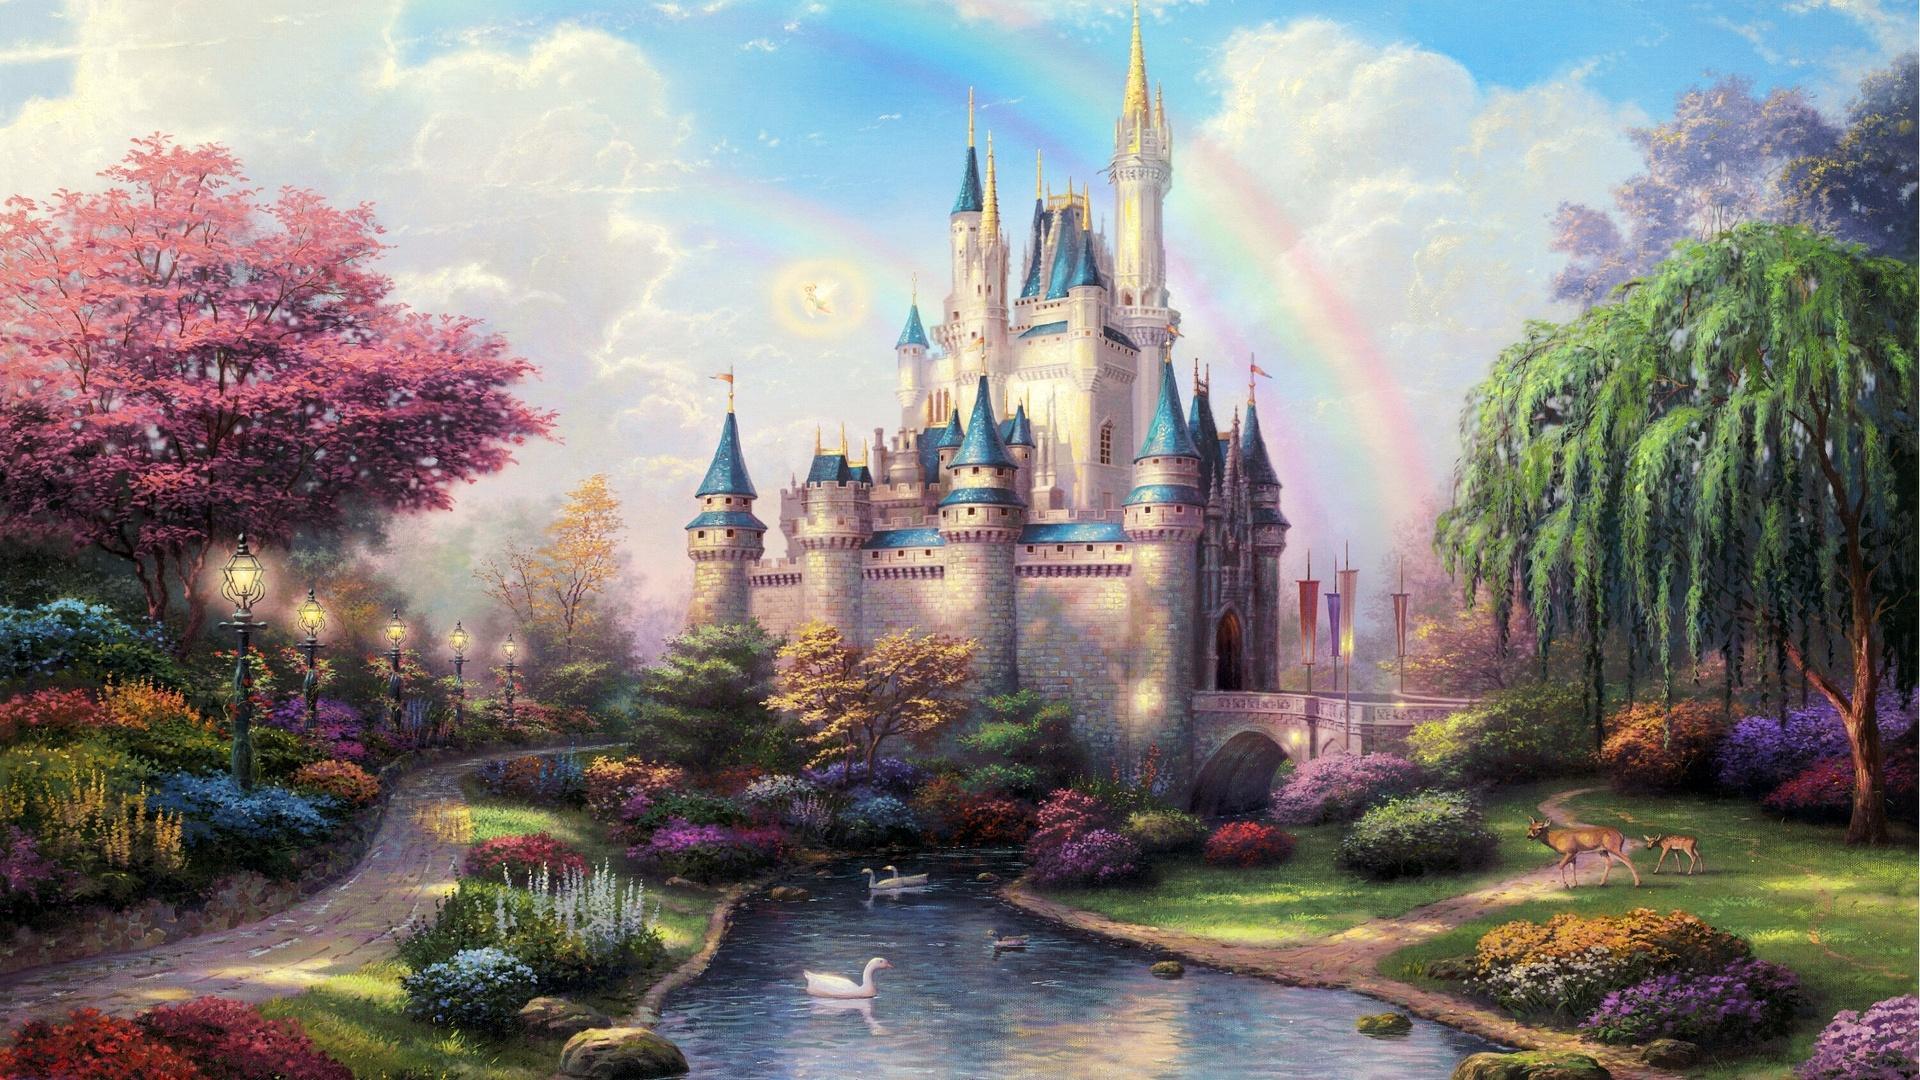 Disney Magical Kingdom wallpaper